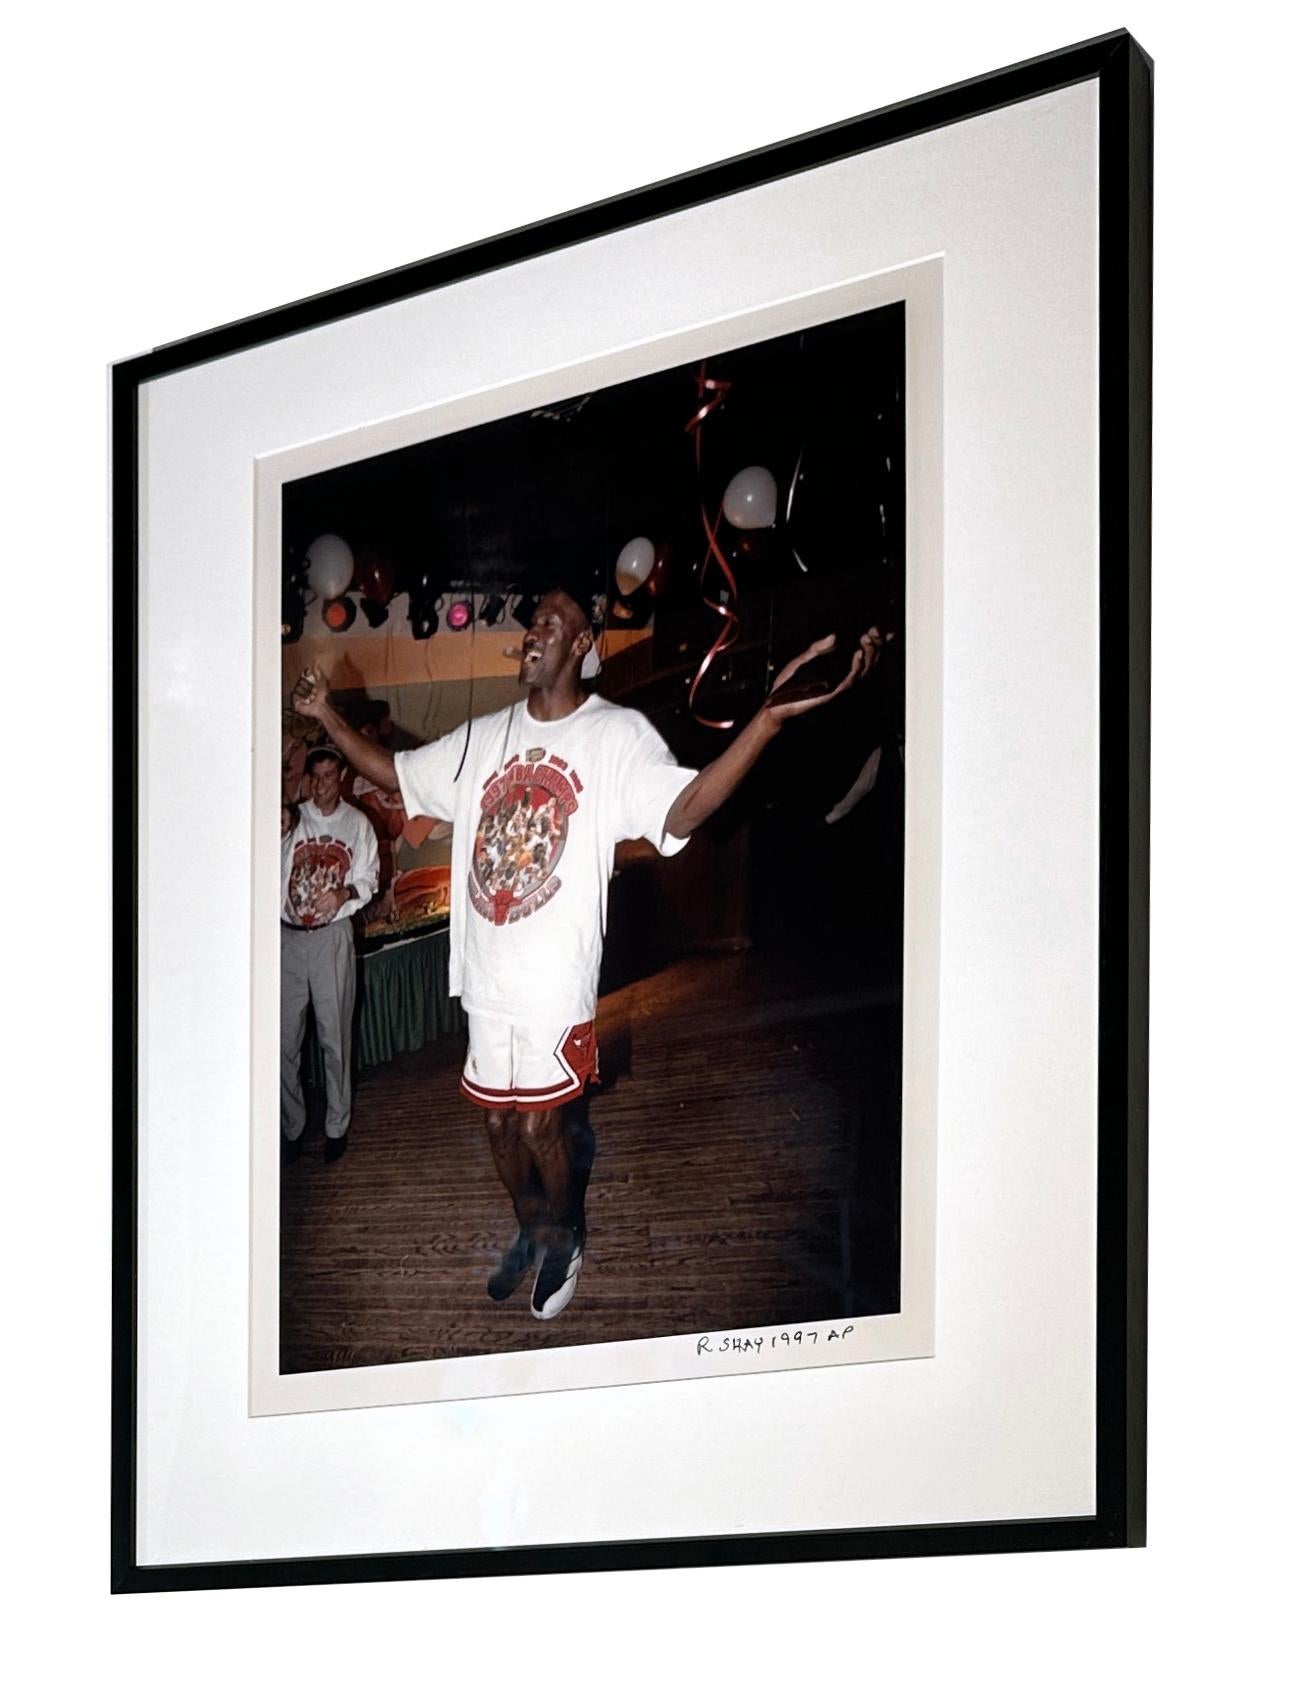 Shoeless Michael Jordan feiert mit dem Sieg in der 5. Meisterschaft, 1997 – Photograph von Richard Shay